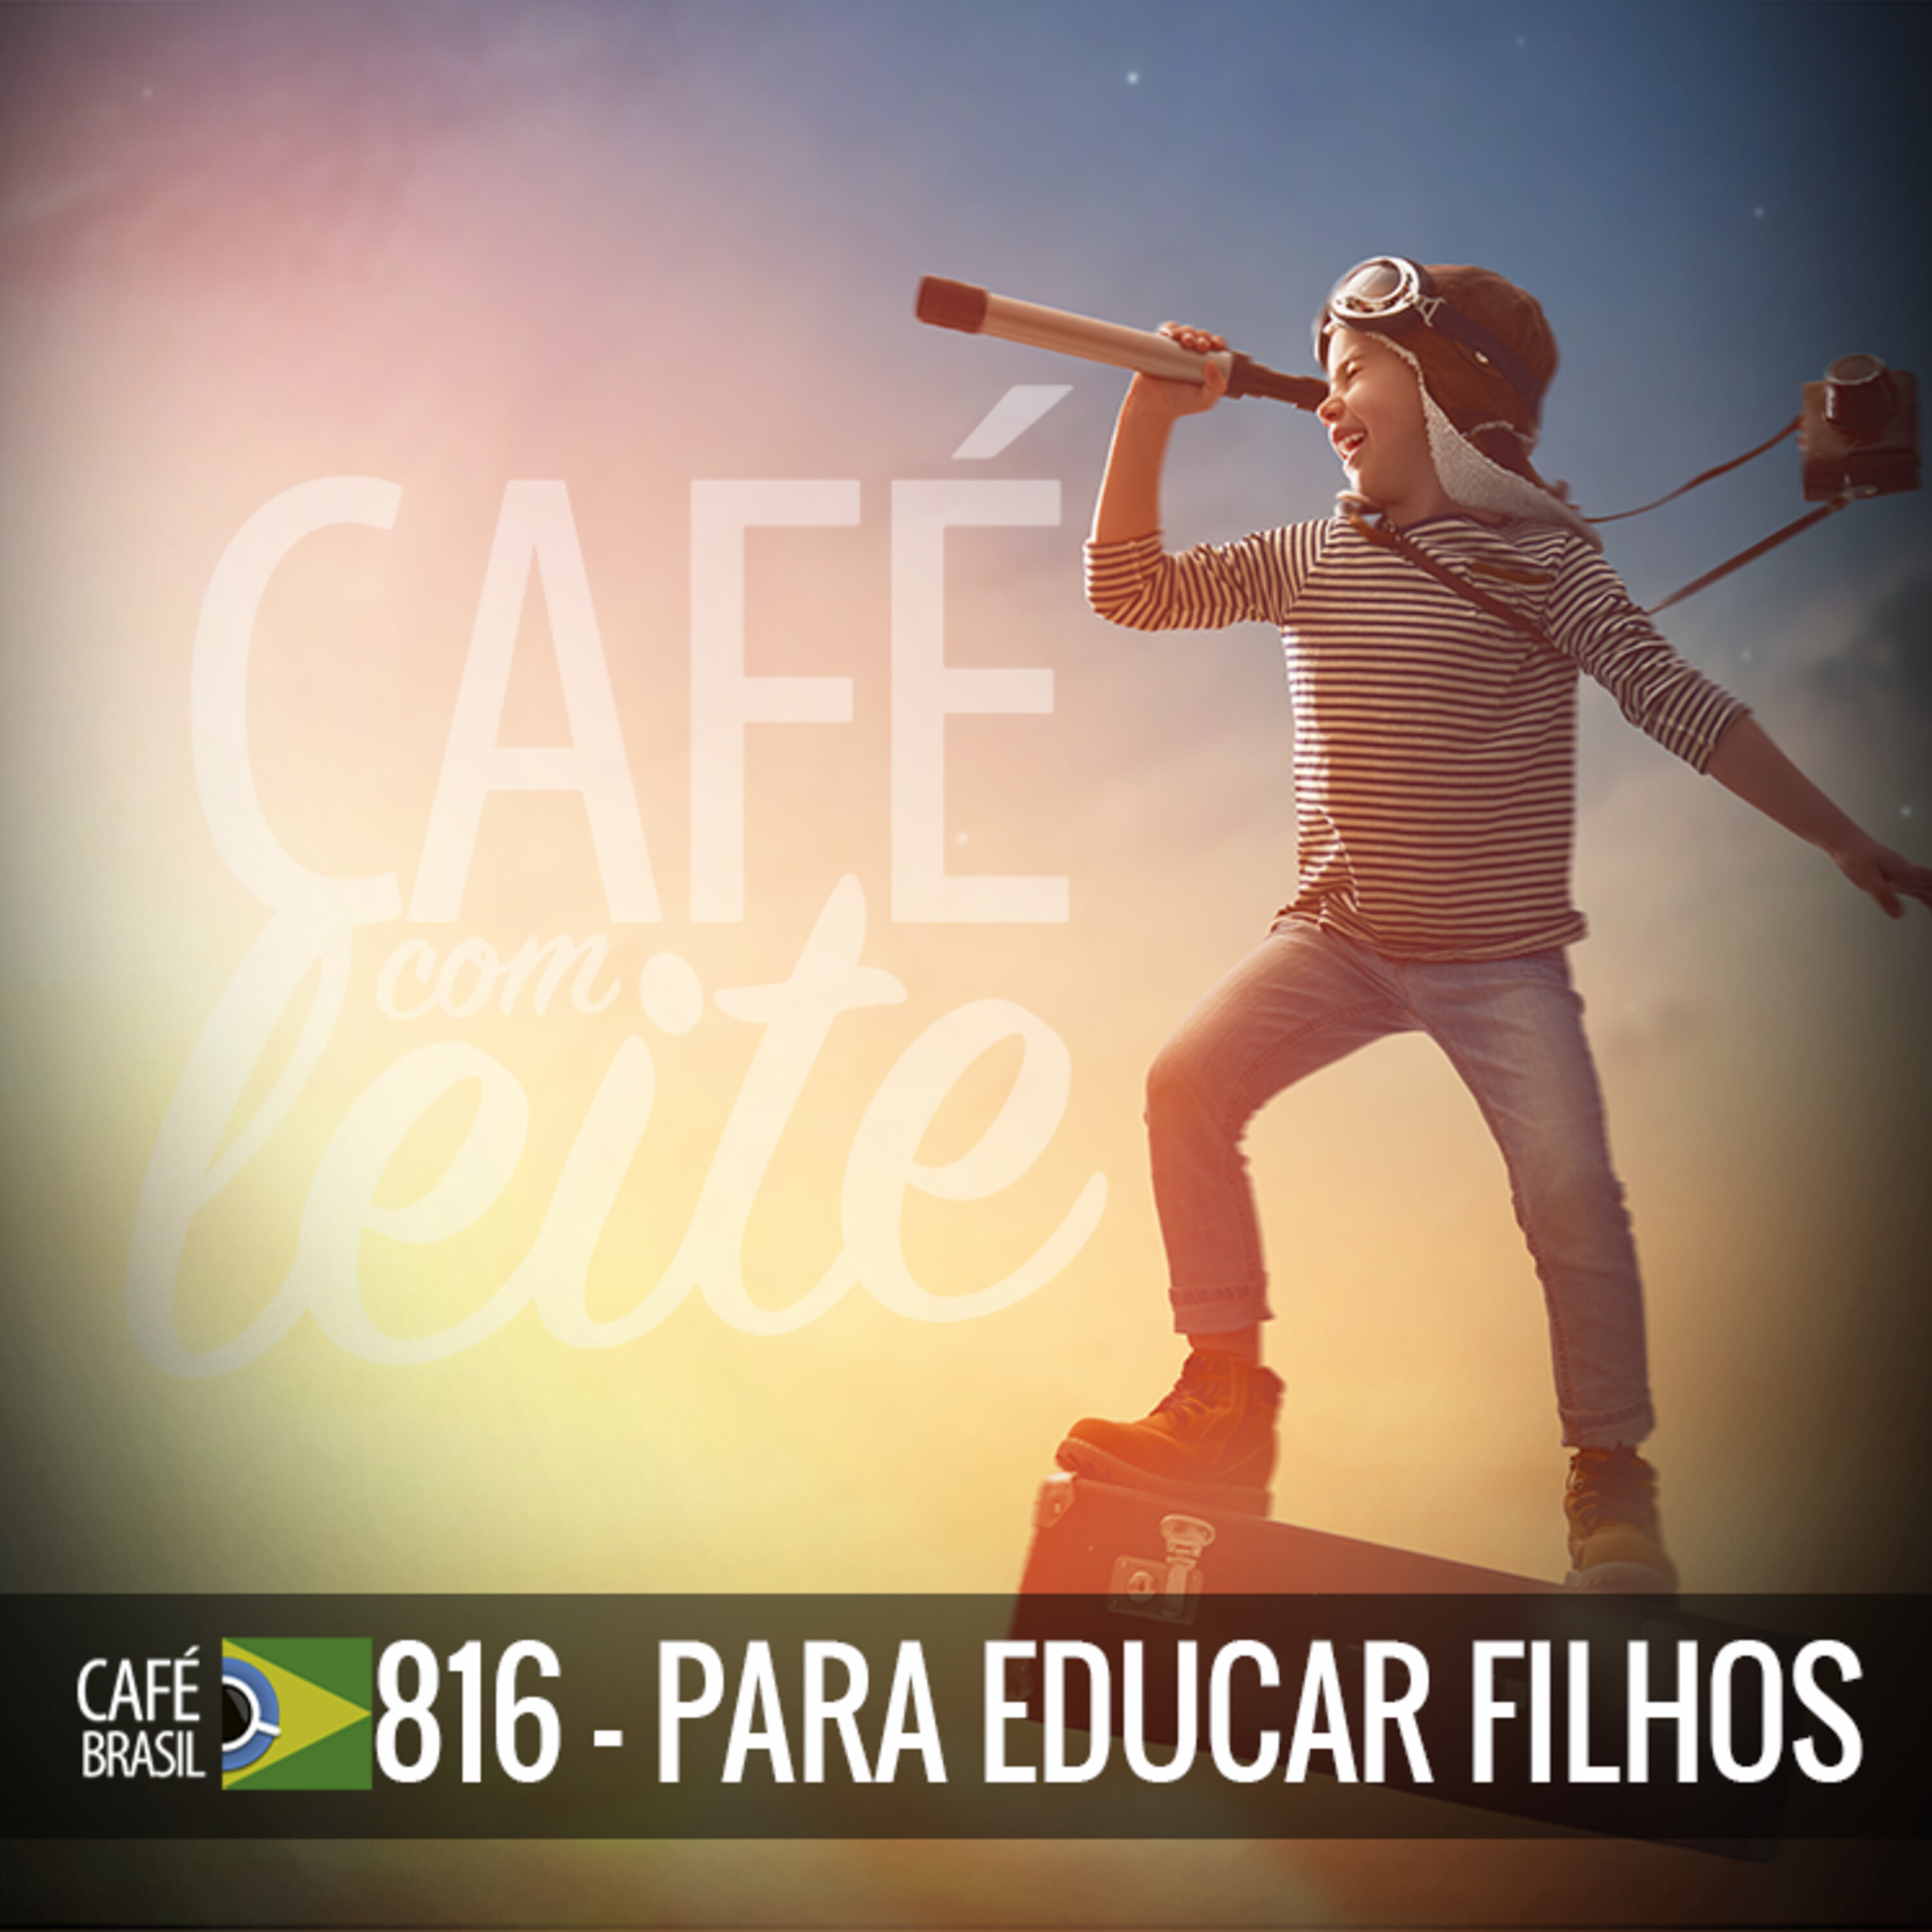 Café Brasil 816 - Para educar filhos